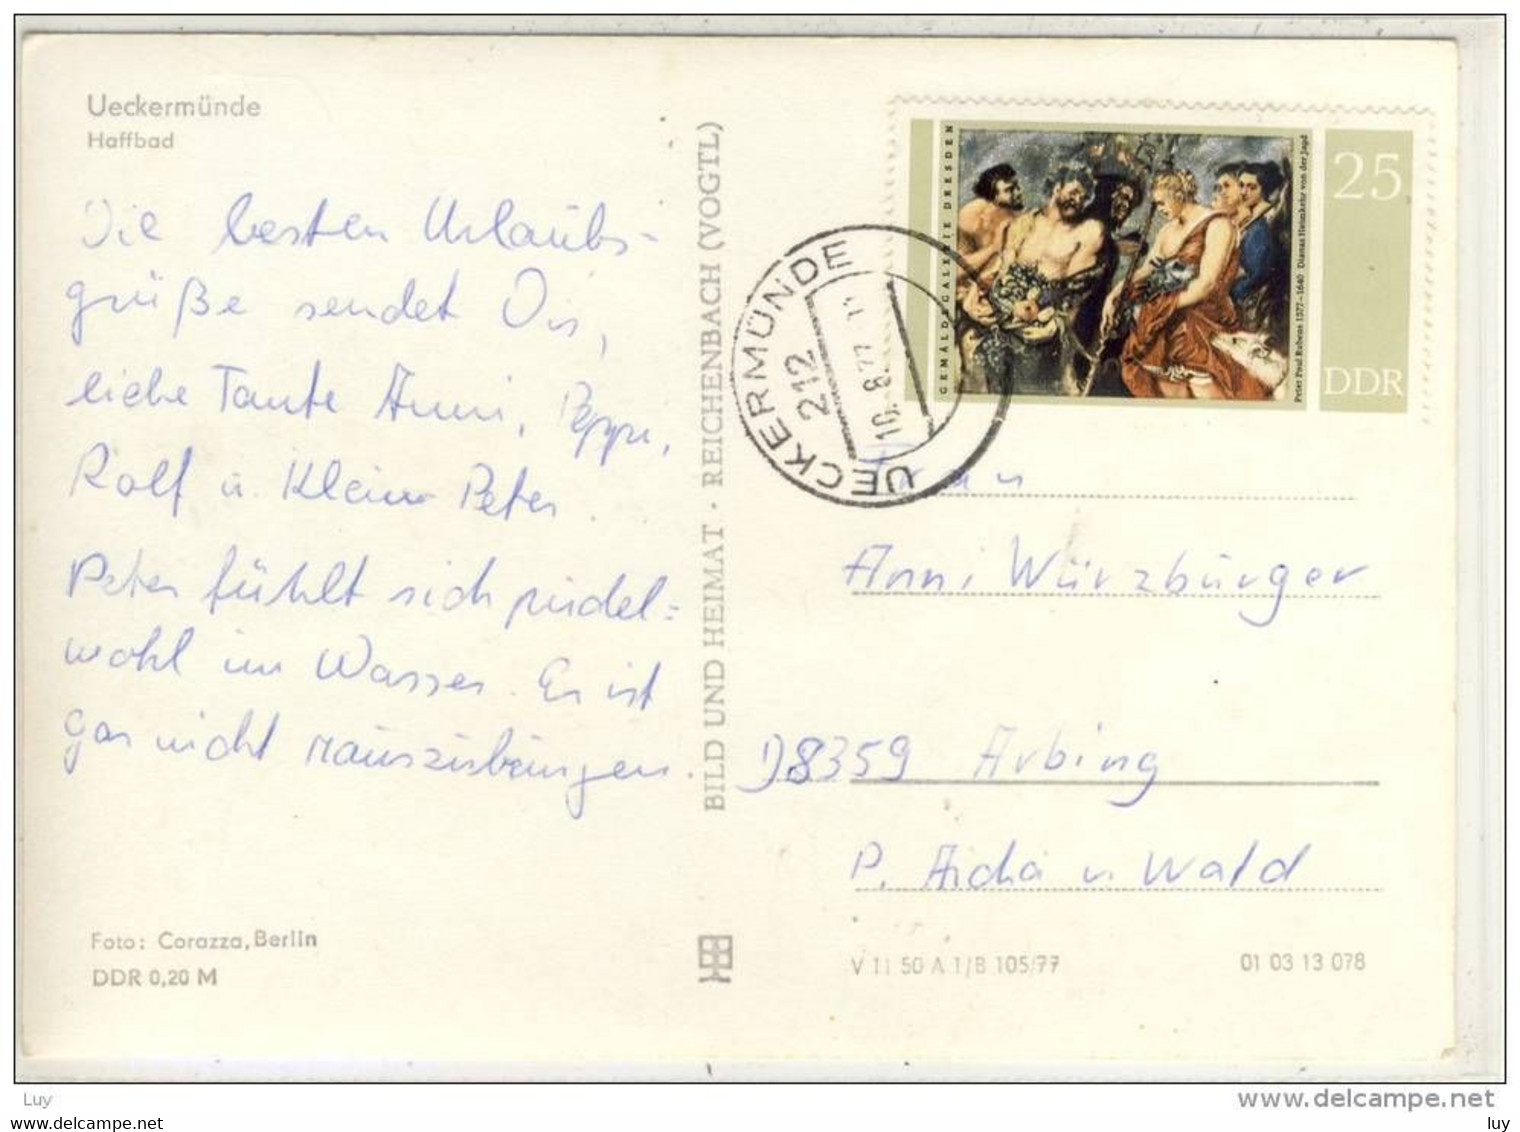 Ueckermünde - Haffbad, Sondermarke DDR, Nice Stamp, Gel. 1977 - Ueckermuende